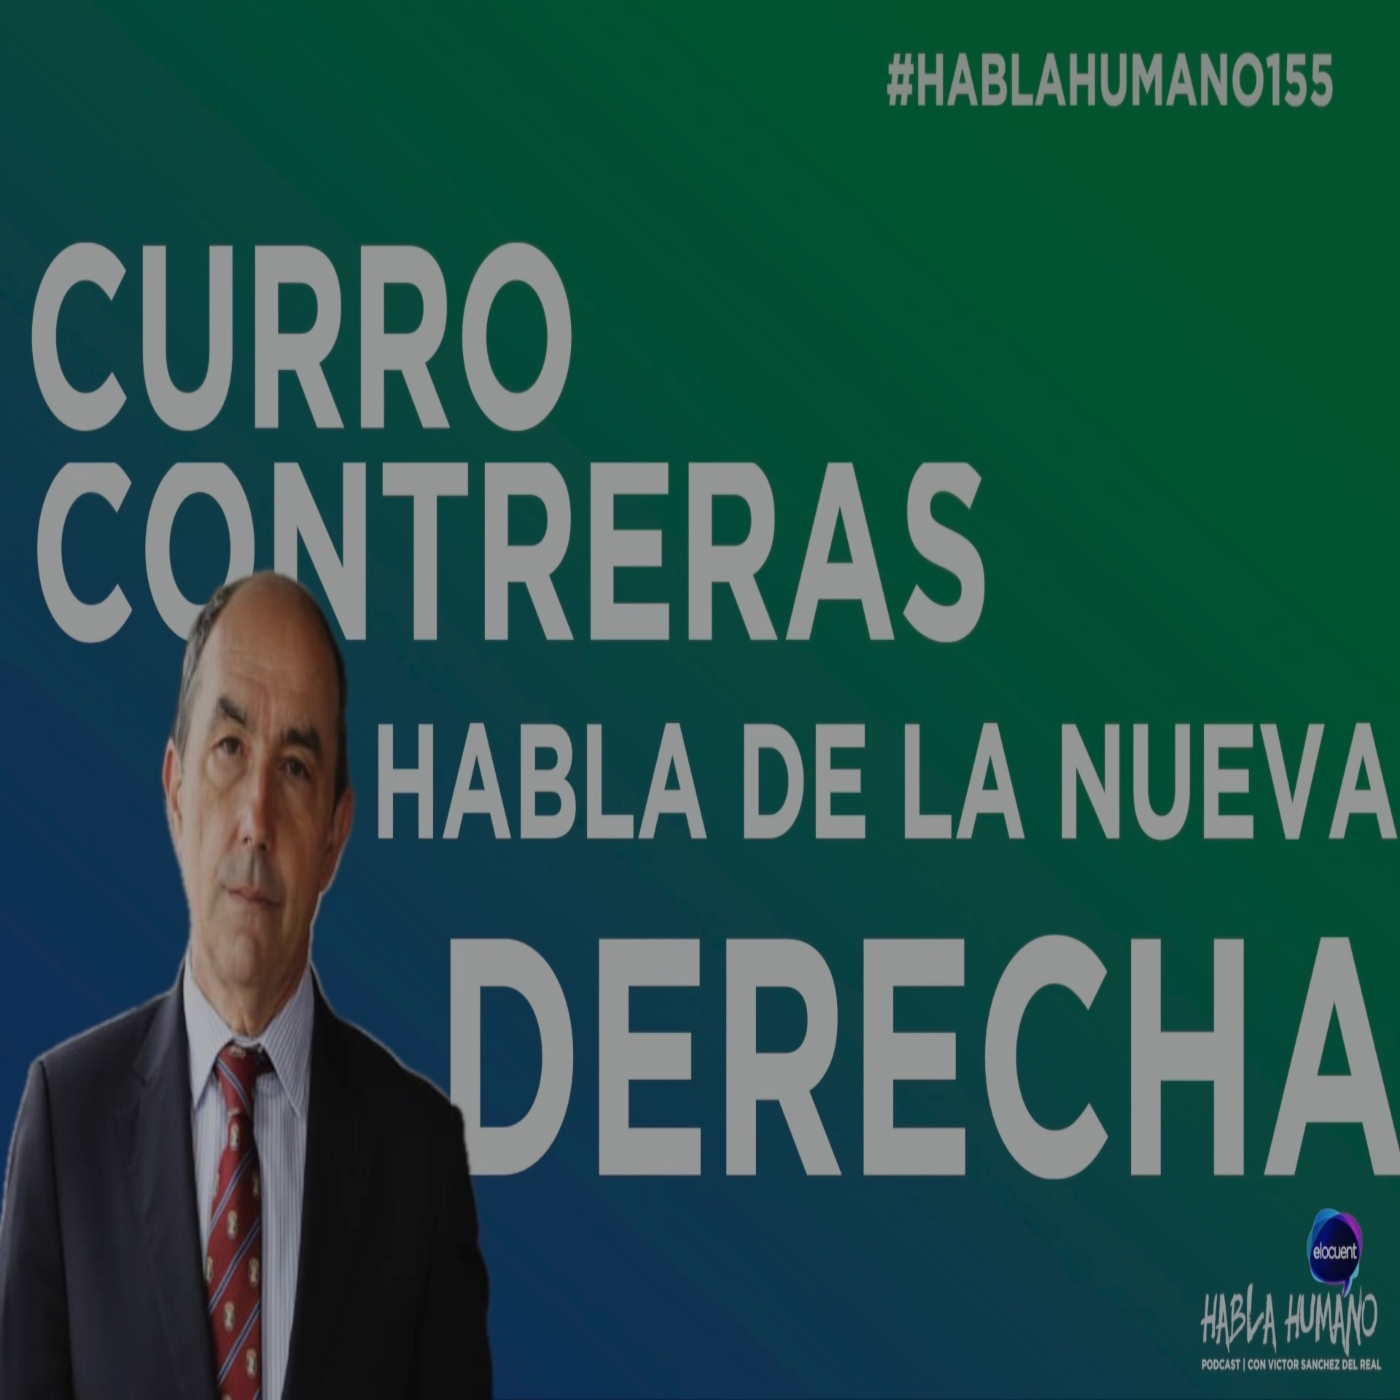 #Hablahumano155: Curro Contreras habla de la “Nueva Derecha”